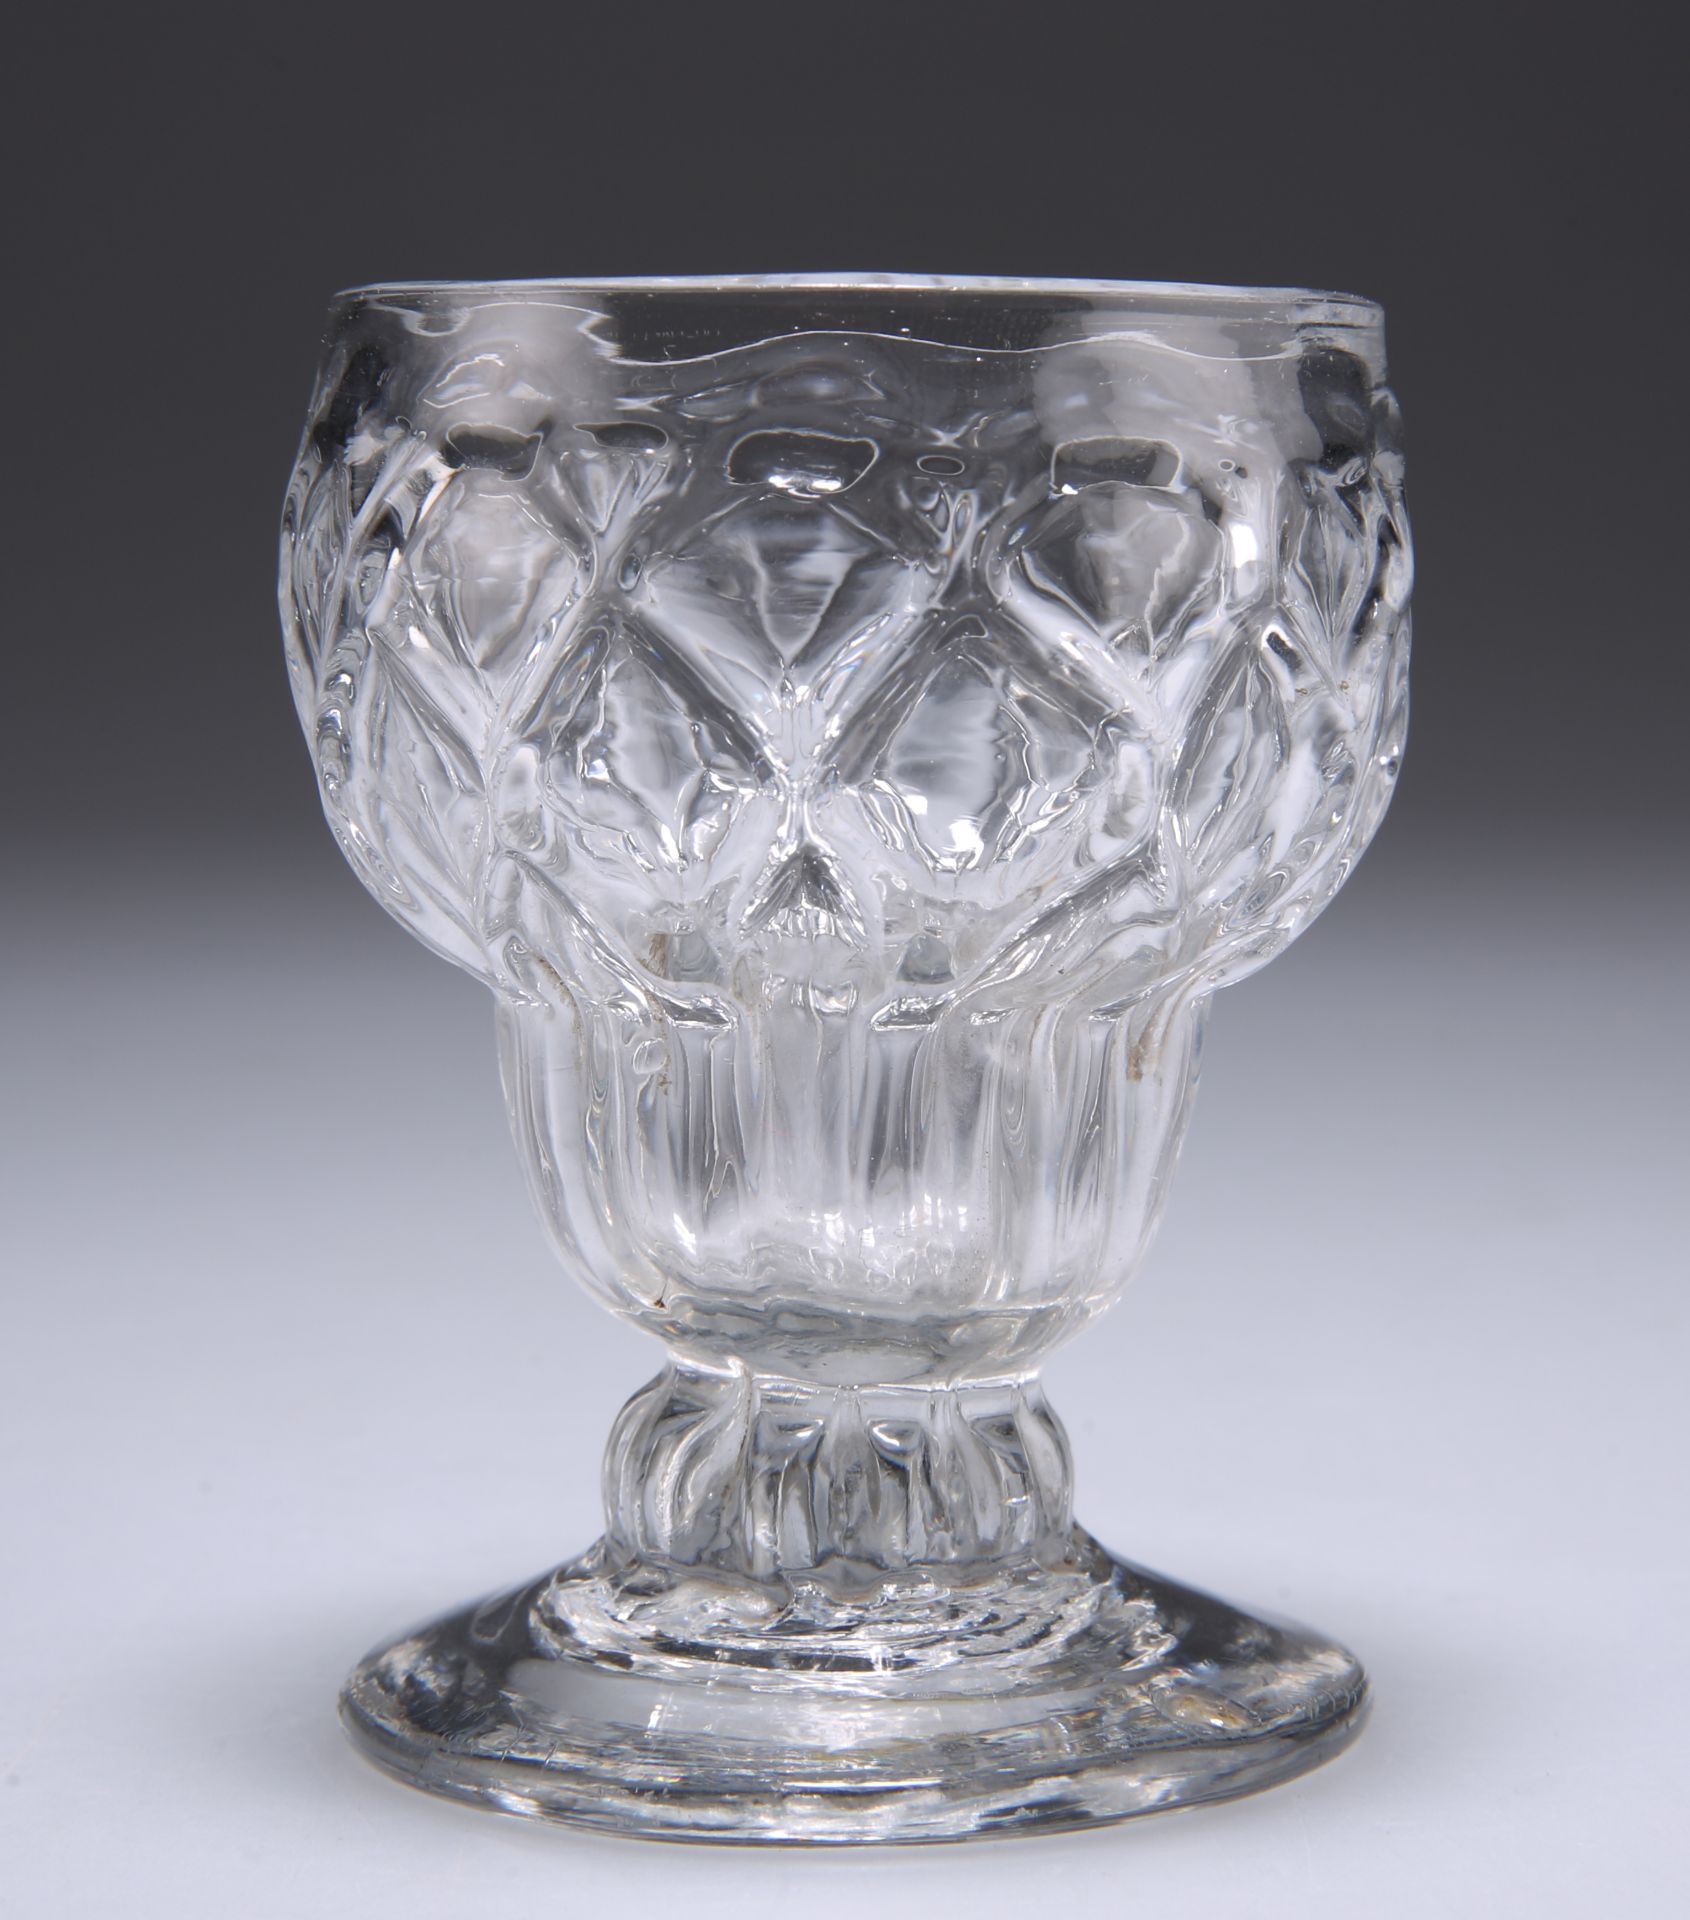 A BONNET OR MONTEITH GLASS, CIRCA 1775